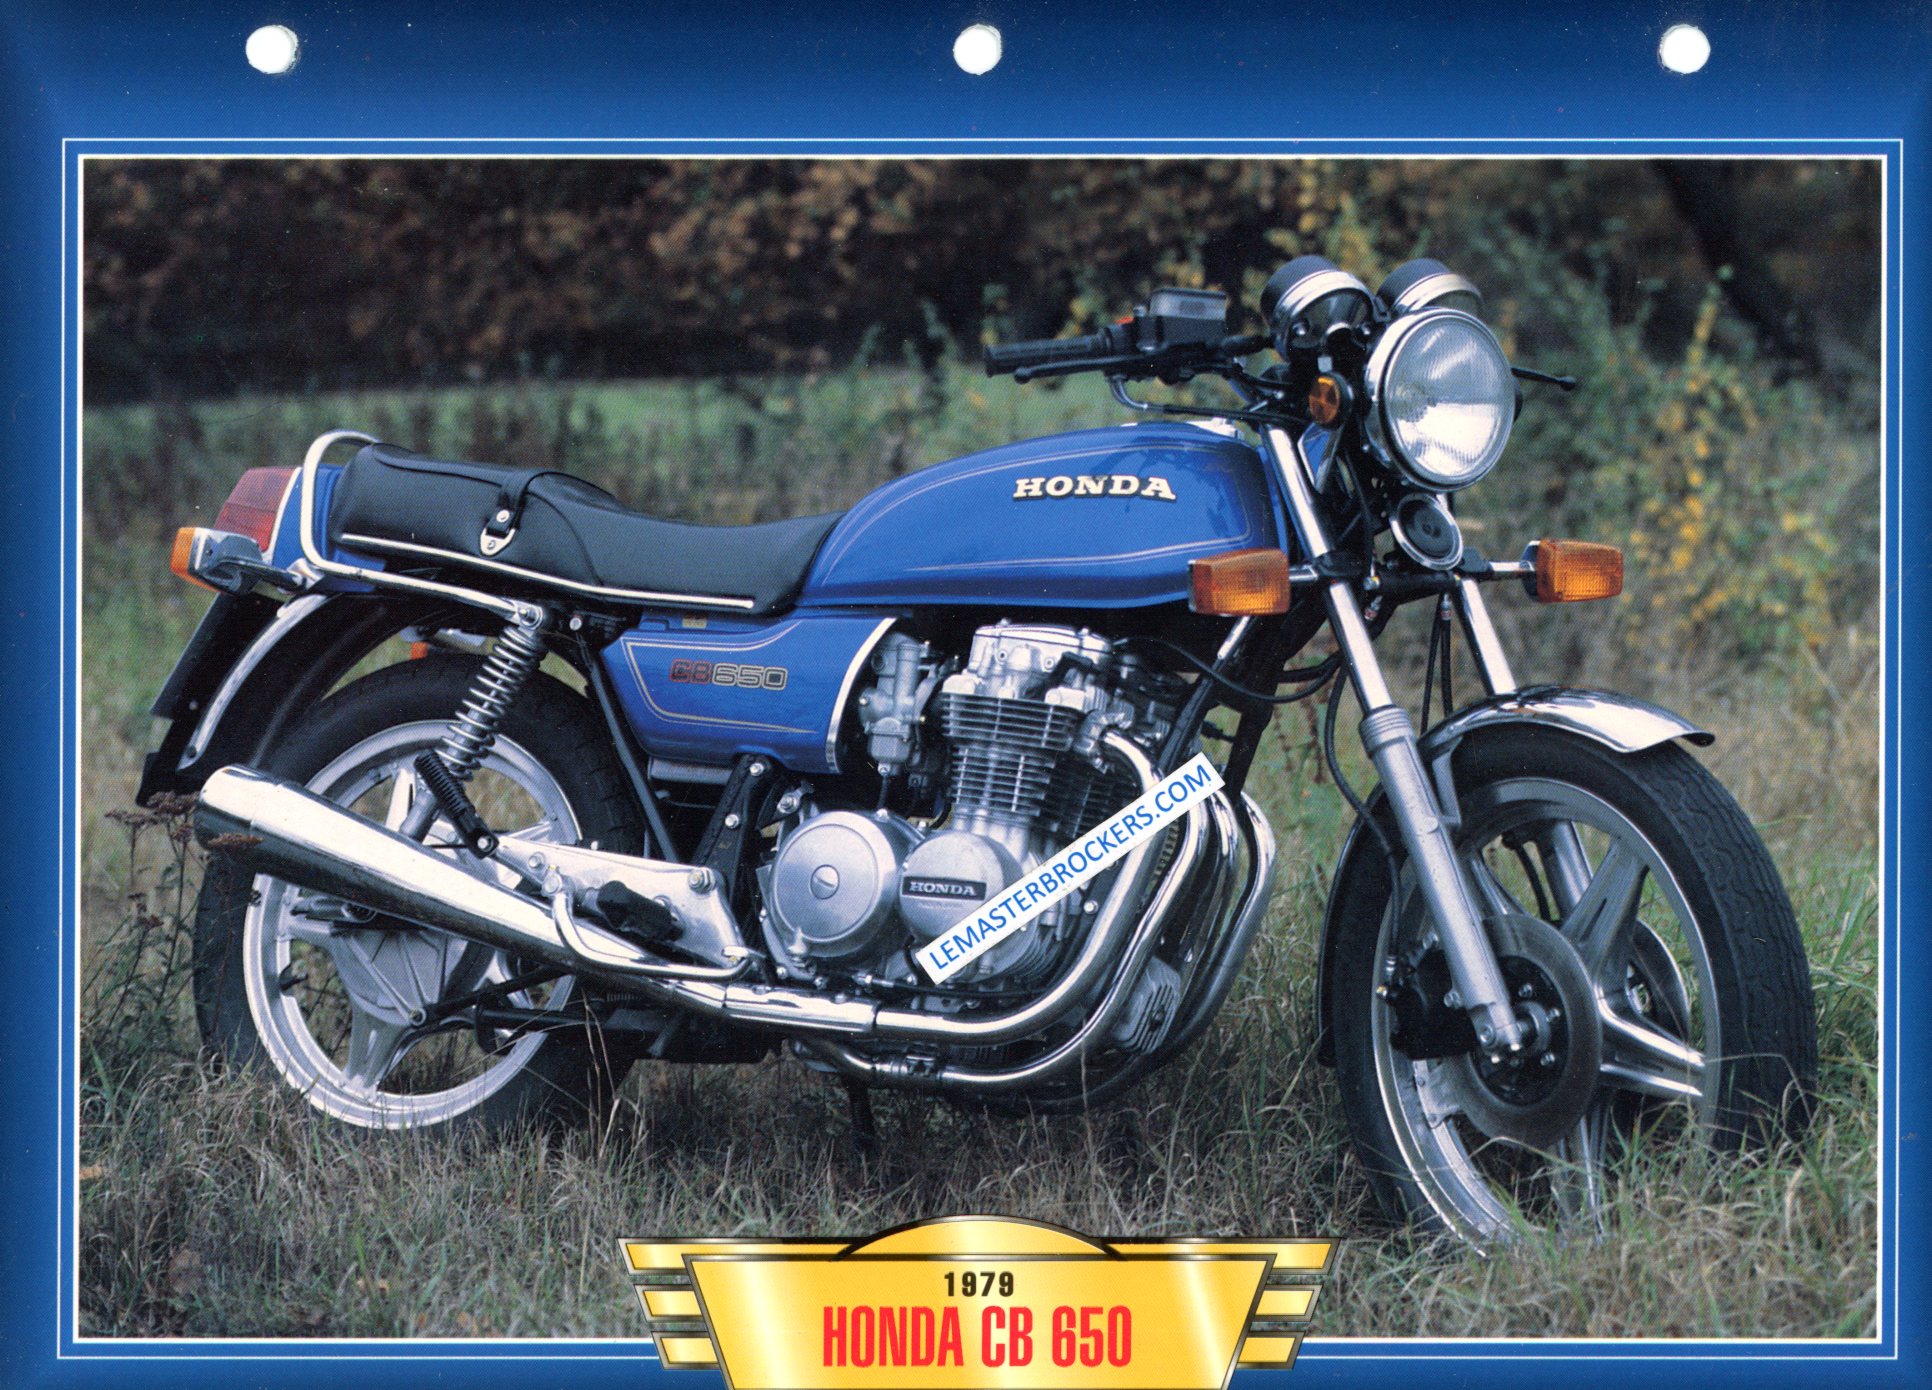 HONDA CB 650 CB650 1979